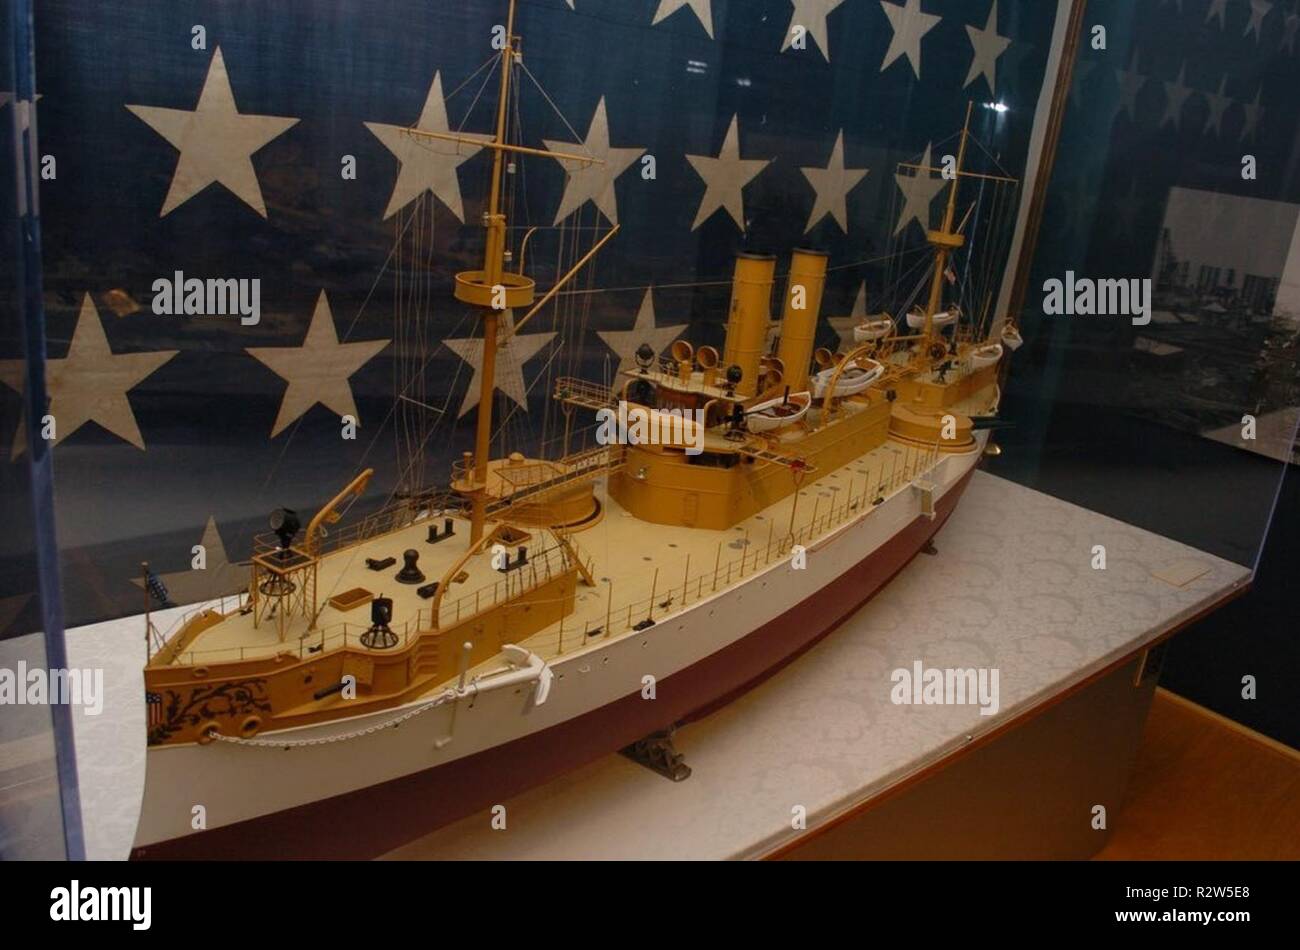 Am 18. November 1889, das Schlachtschiff USS Maine (ACR1) ist an der New York Navy Yard auf den Markt gebracht. Sie wurde 1895 in Betrieb genommen und war das erste US-Marine Kriegsschiff nach dem Zustand von Maine genannt zu werden. Sie gewinnt nationale Aufmerksamkeit, als sie plötzlich am 15. Februar 1898 explodierte, während im Hafen von Havanna, Kuba. Die Hampton Roads Naval Museum enthält ein detailliertes Modell der USS Maine in Ihrer Galerie. Hinter dem Modell ist die Naval Jack von der Maine. Taucher die Untersuchung der Explosion auf dem Linienschiff wieder die Buchse von der Maine. Auf der Rückseite, es liest "Union Nr. 3 Navy Yard New York 1892.". Stockfoto